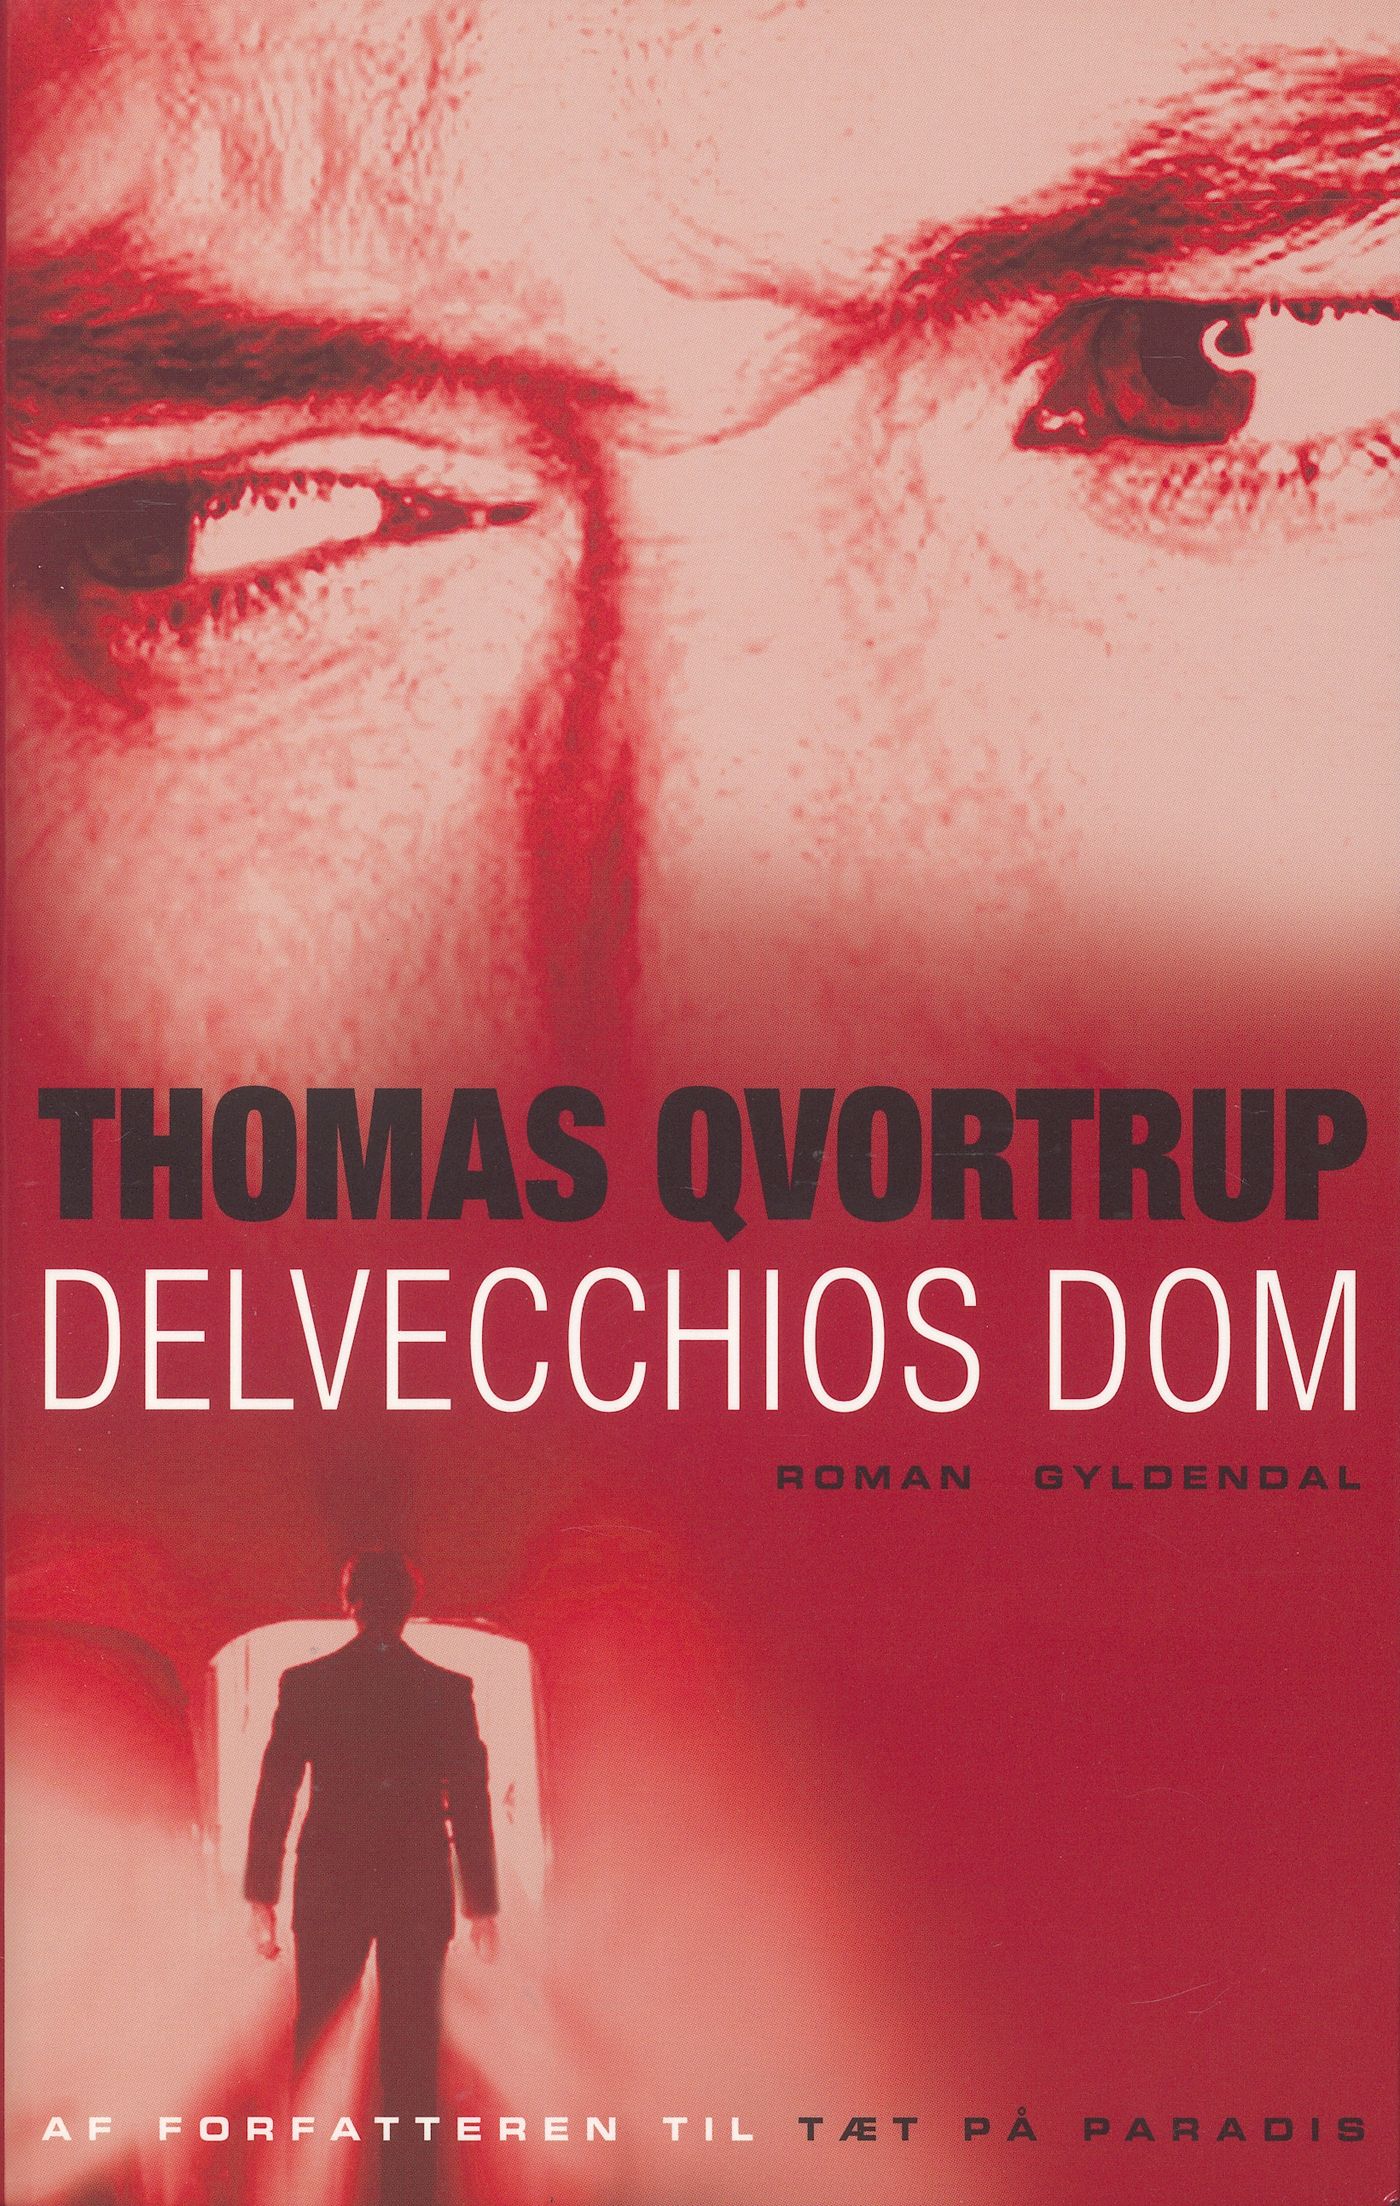 Delvecchios dom, e-bok av Thomas Qvortrup